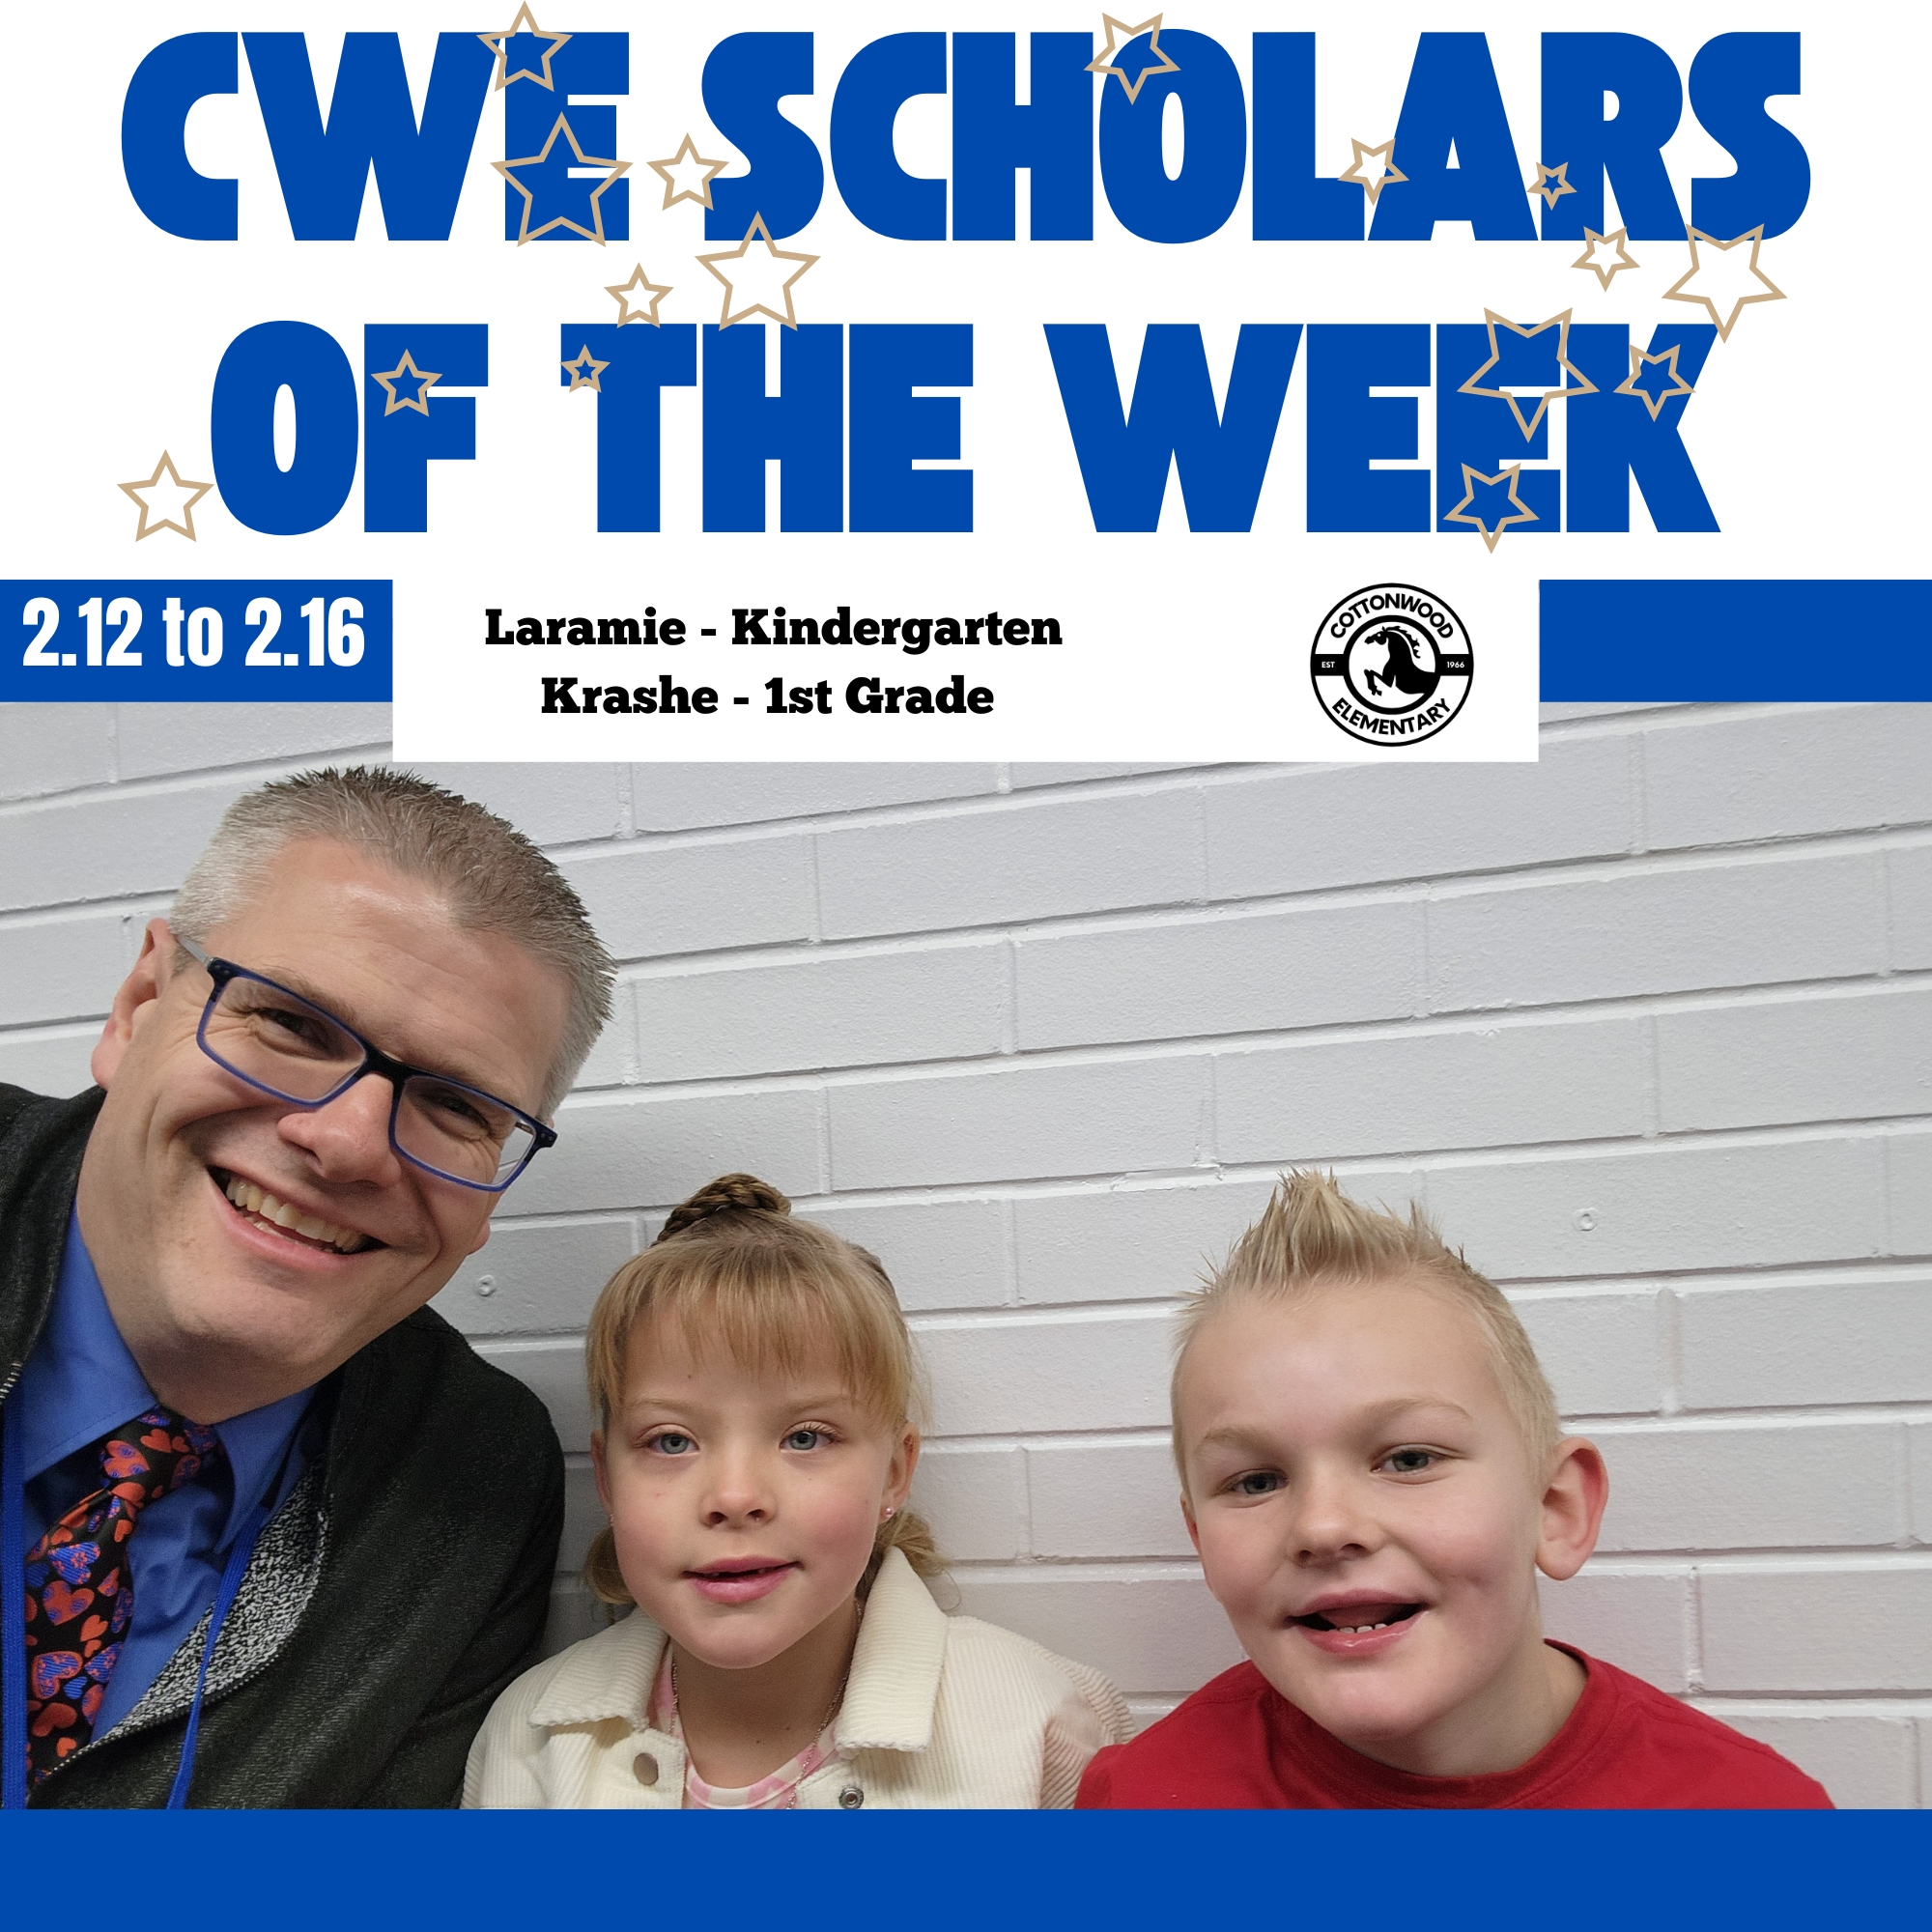 CWE-Scholars-of-the-Week-2.12-to-2.16.jpg